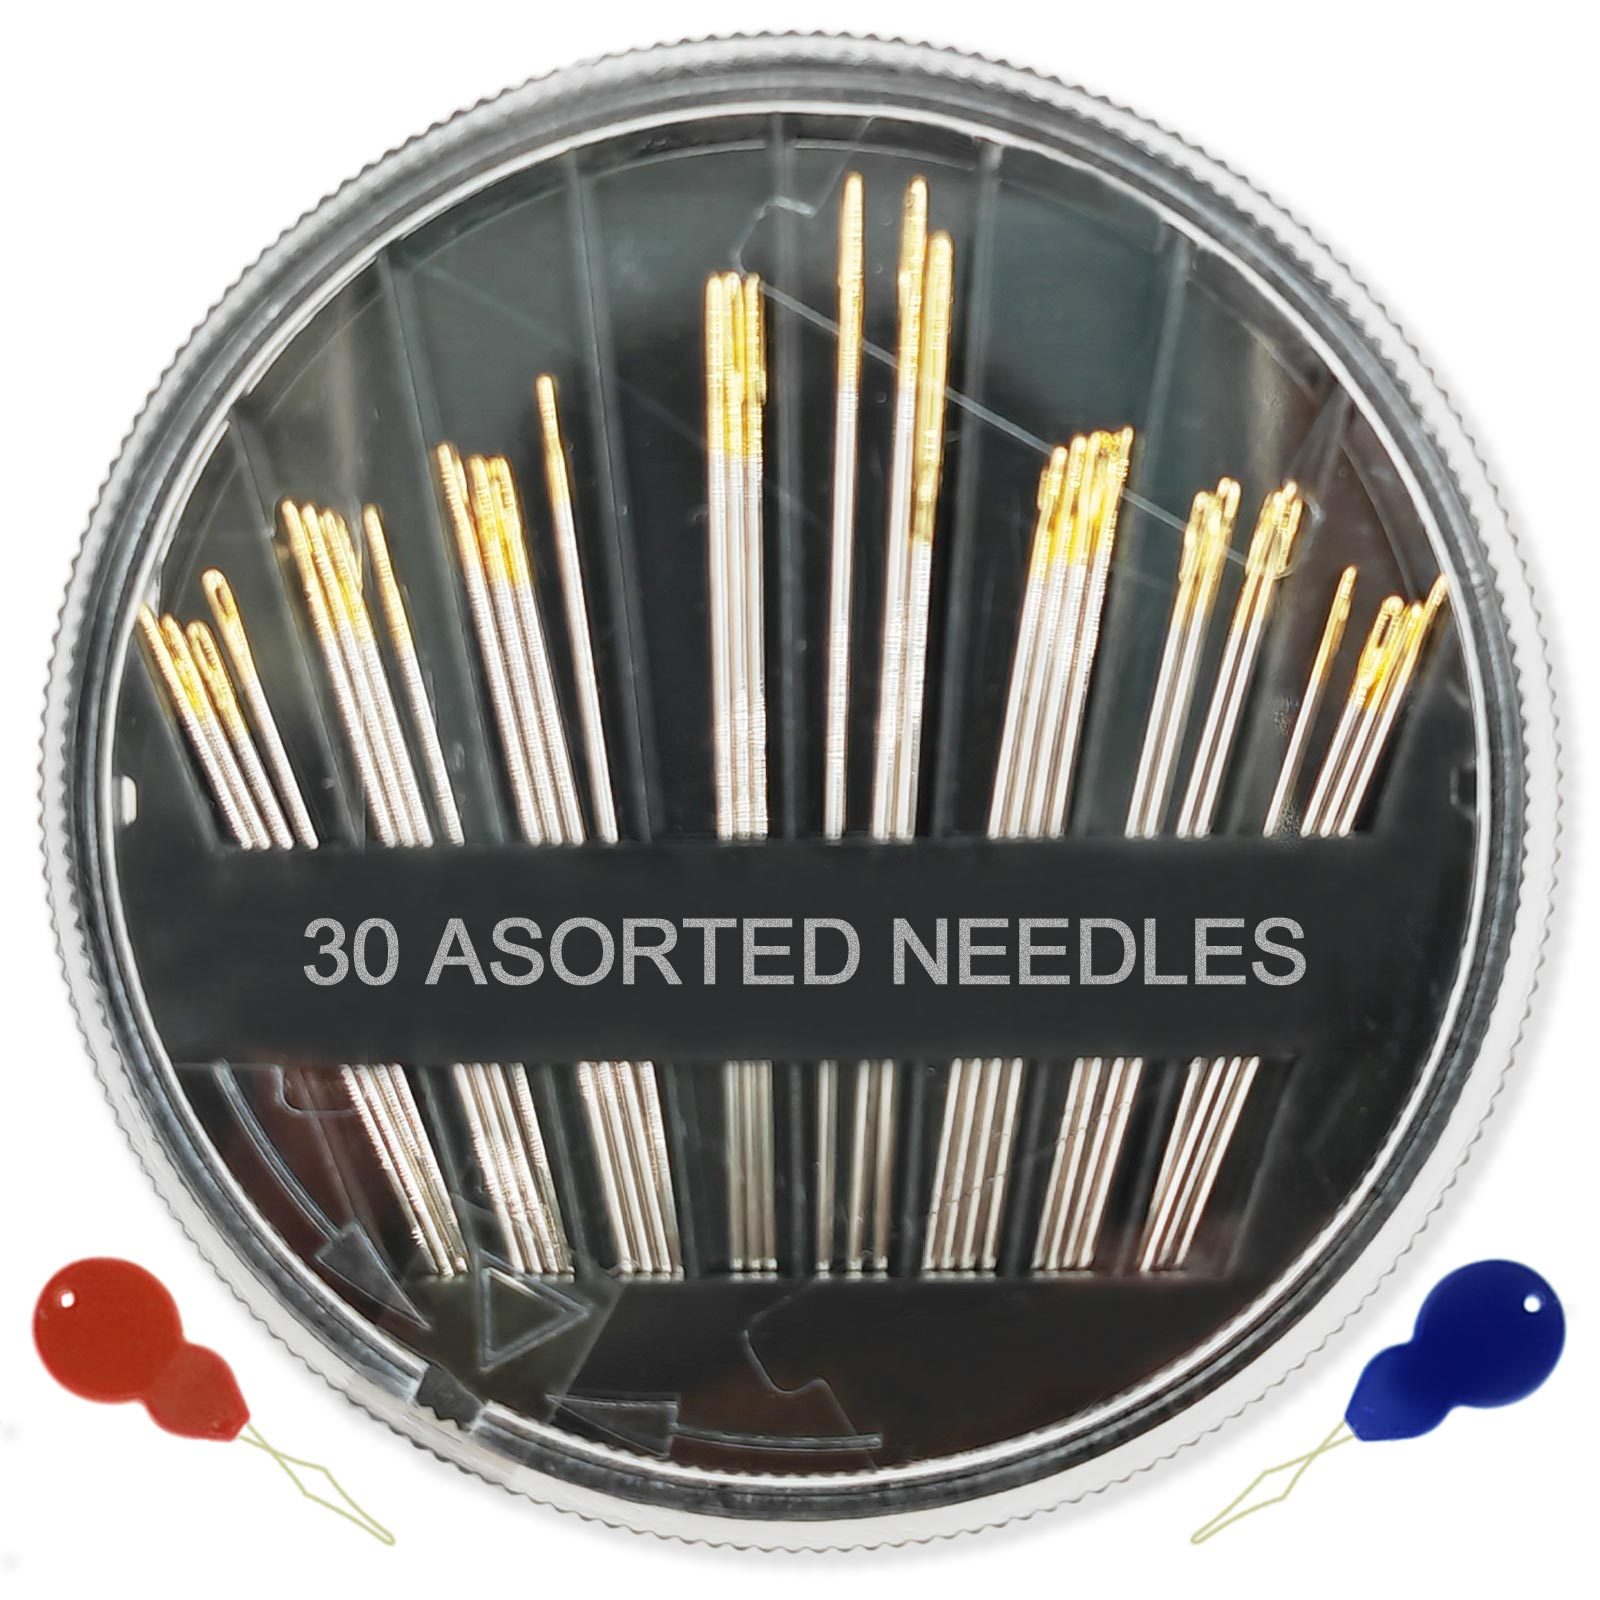 30 Pack Premium Hand Sewing Needles 6 Sizes Assorted Sewing Needles for  Handsewing Large Eye Stitching Needles for Sewing Repair Embroidery Needles  Sewing Sharp Needles (1)